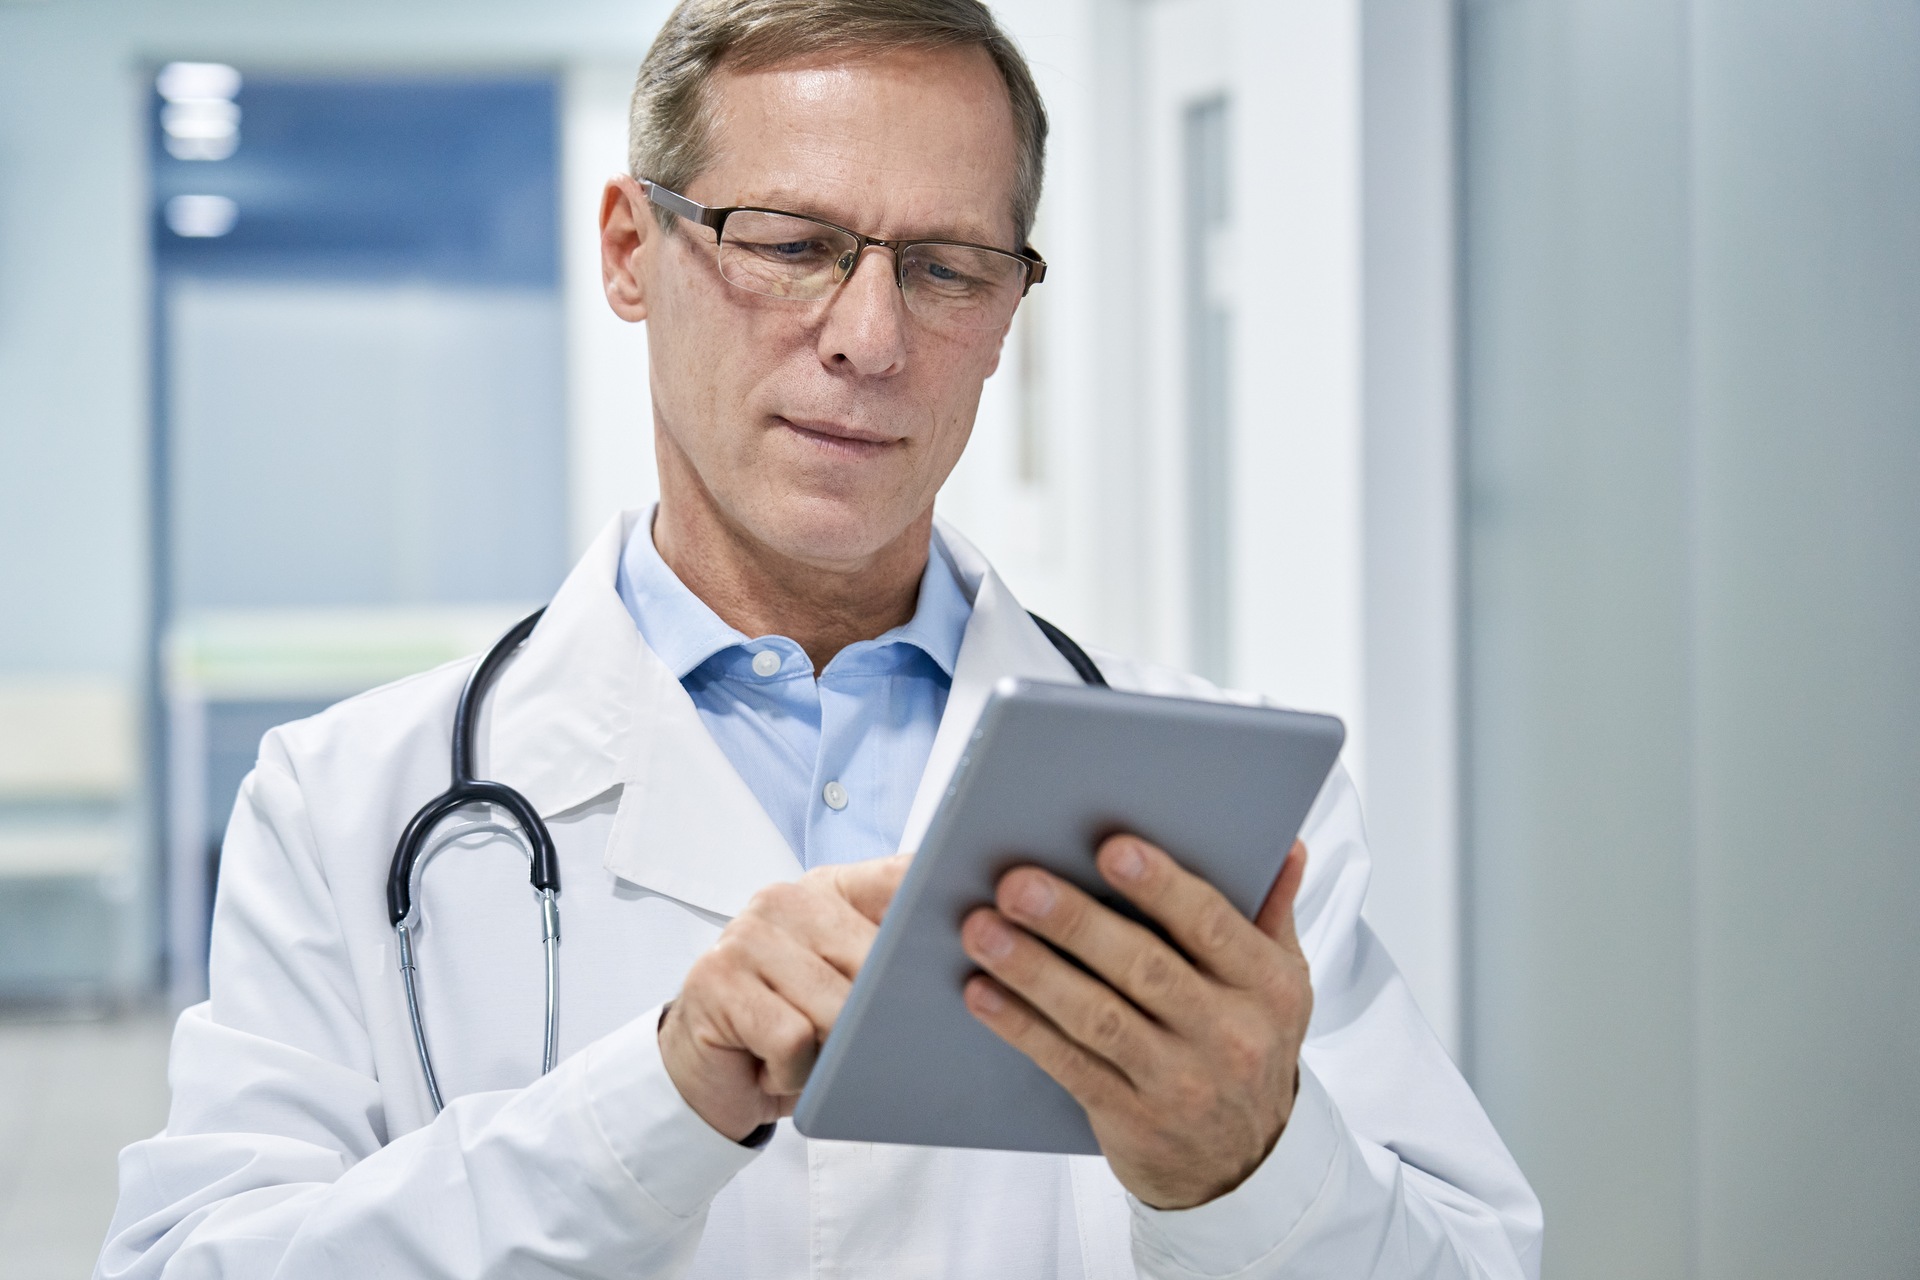 Sveikatos priežiūros skaitmeninimas: Šveicarijos gyventojai nori geros pridėtinės vertės iš skaitmeninės sveikatos priežiūros transformacijos, patogesnės vartotojui, geresnės diagnostikos ir gydymo bei mažesnių sveikatos priežiūros išlaidų